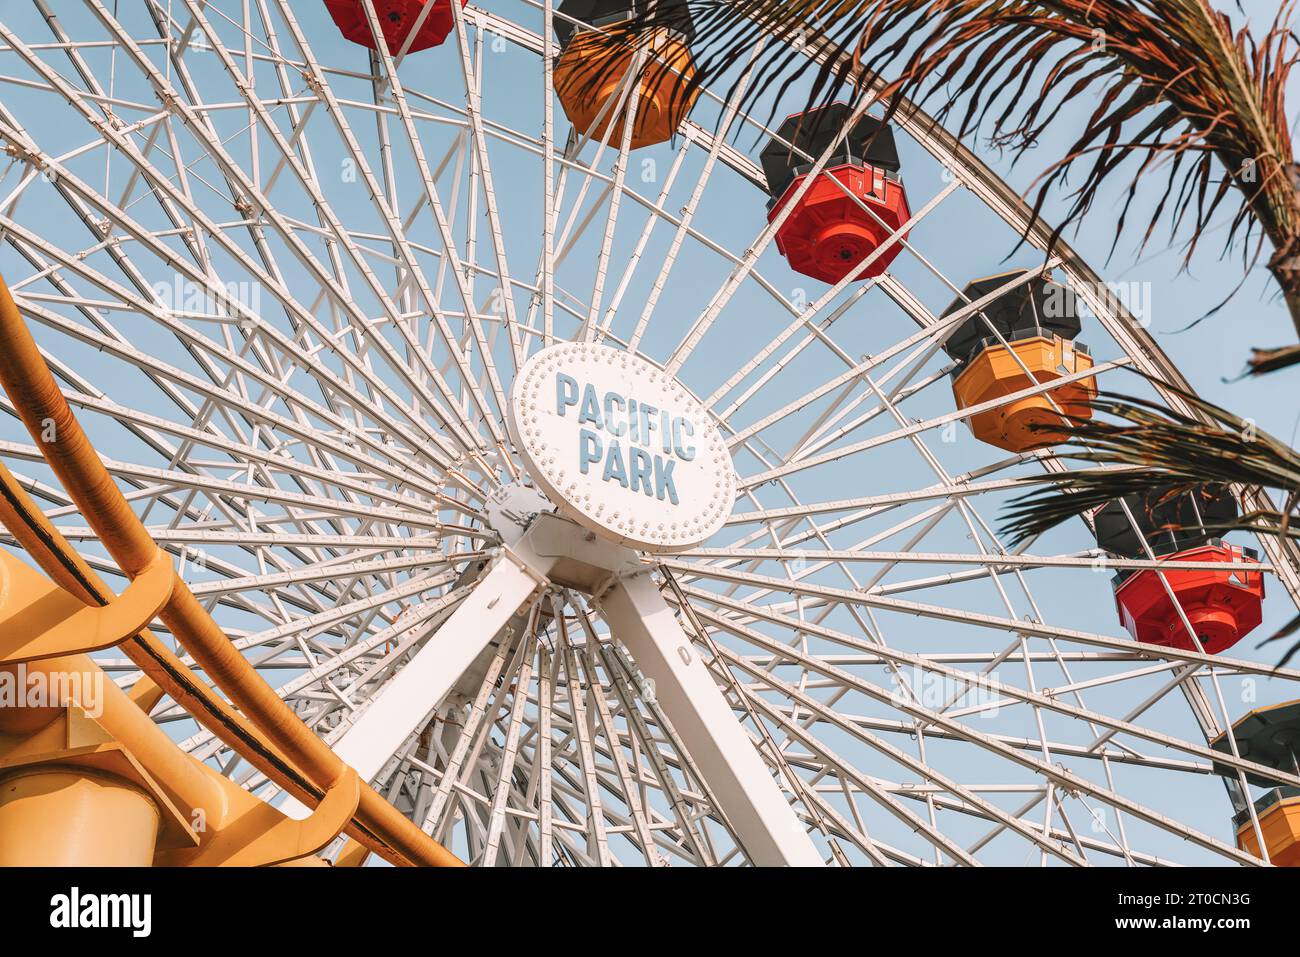 Pazifisches Rad. Solarbetriebenes Riesenrad im Pacific Park am Santa Monica Pier. Vergnügungspark am Meer in Santa Monica, Los Angeles, USA. Stockfoto